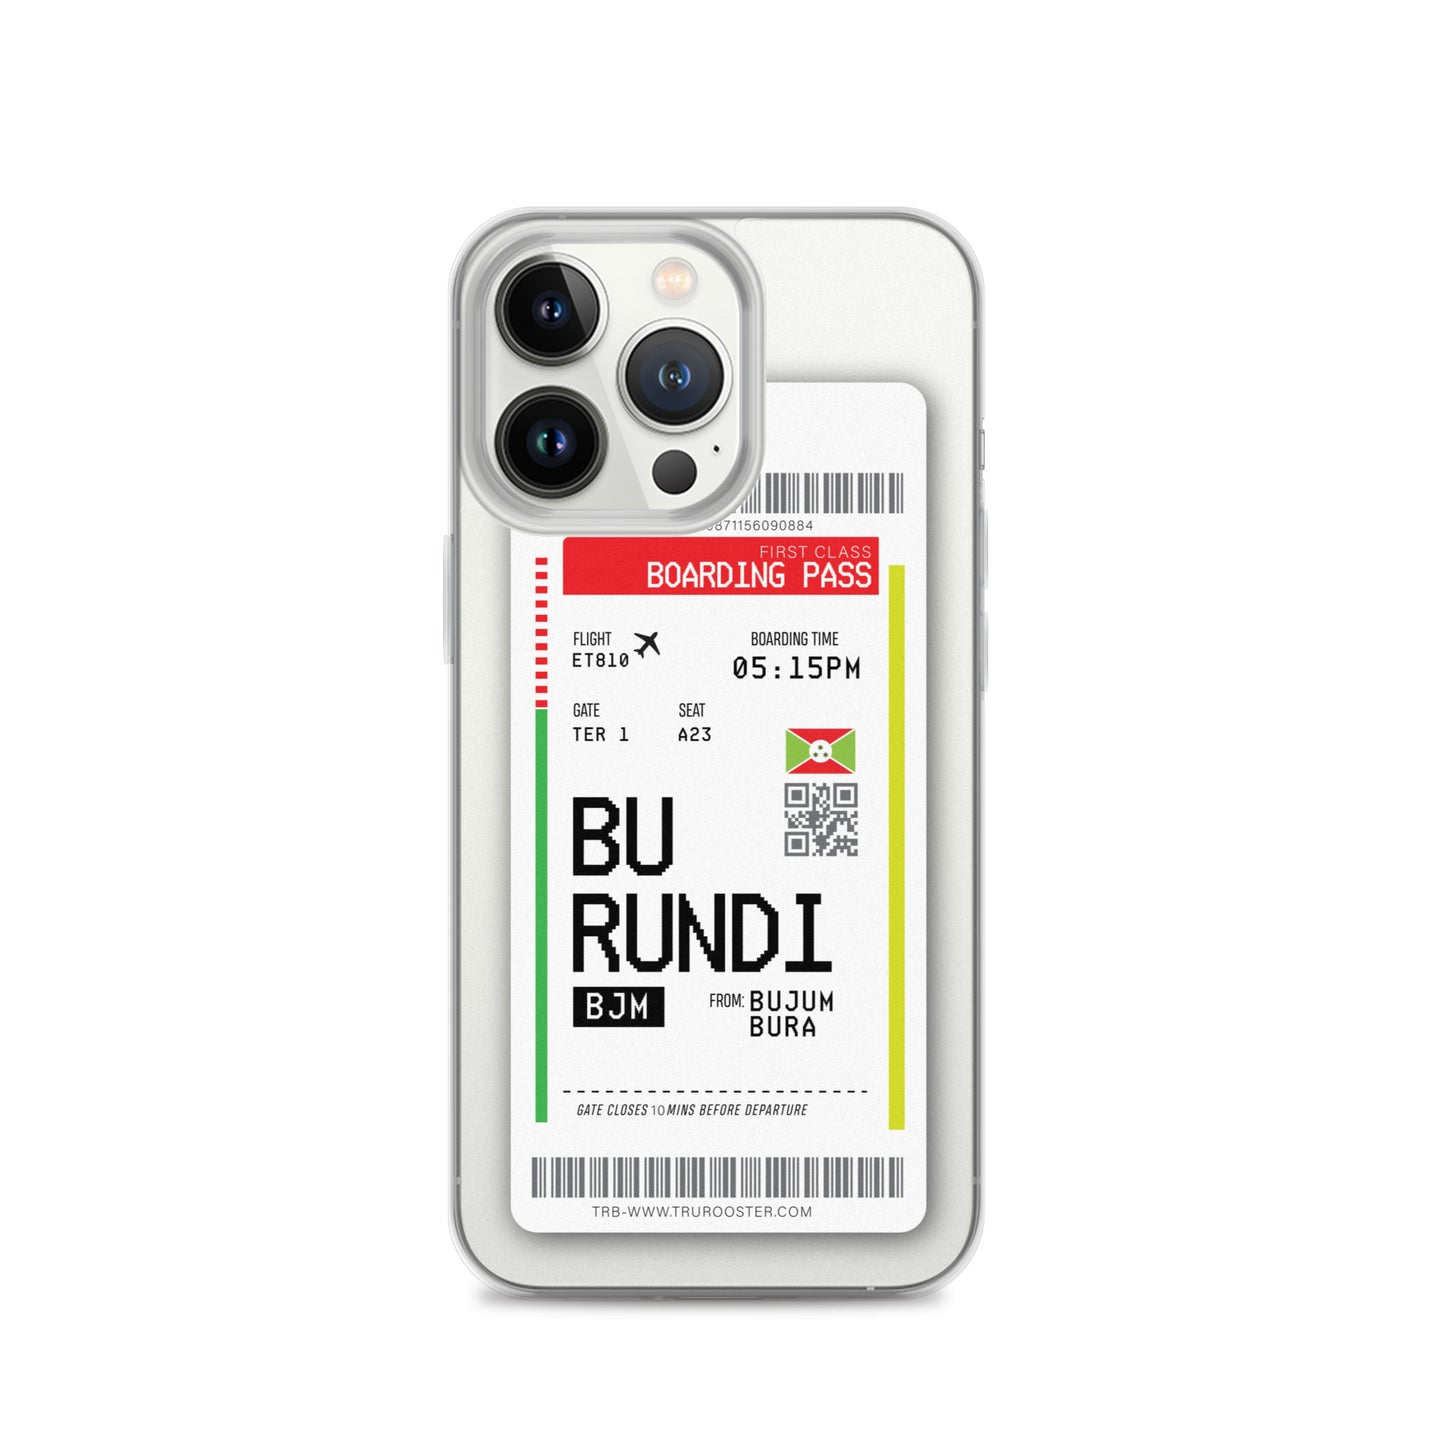 Burundi Transit Boarding Pass iPhone Case